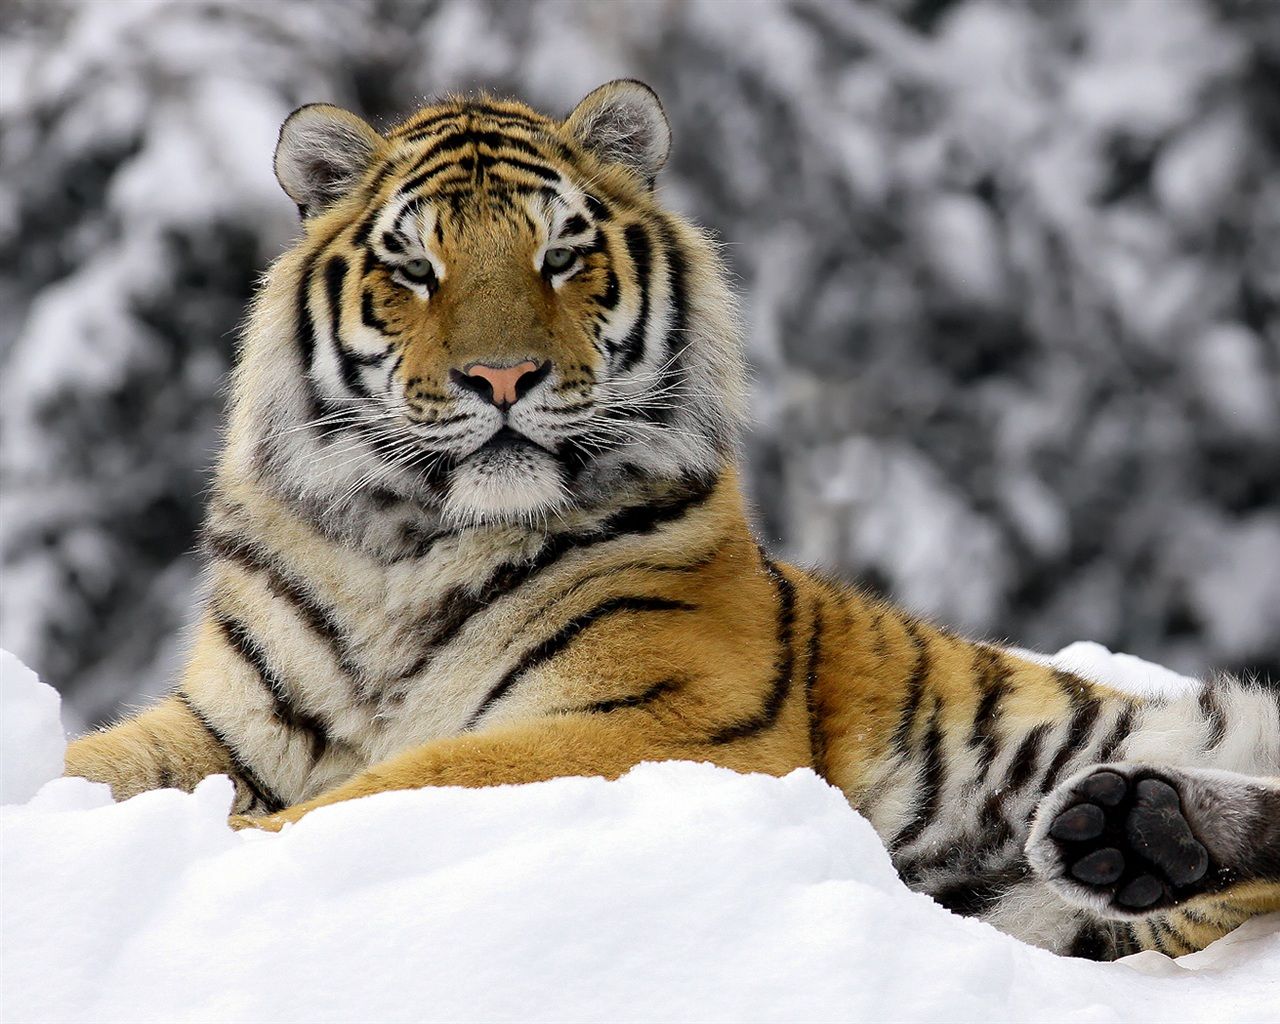 Tiger in Winter Wallpaper | 1280x1024 resolution wallpaper ...